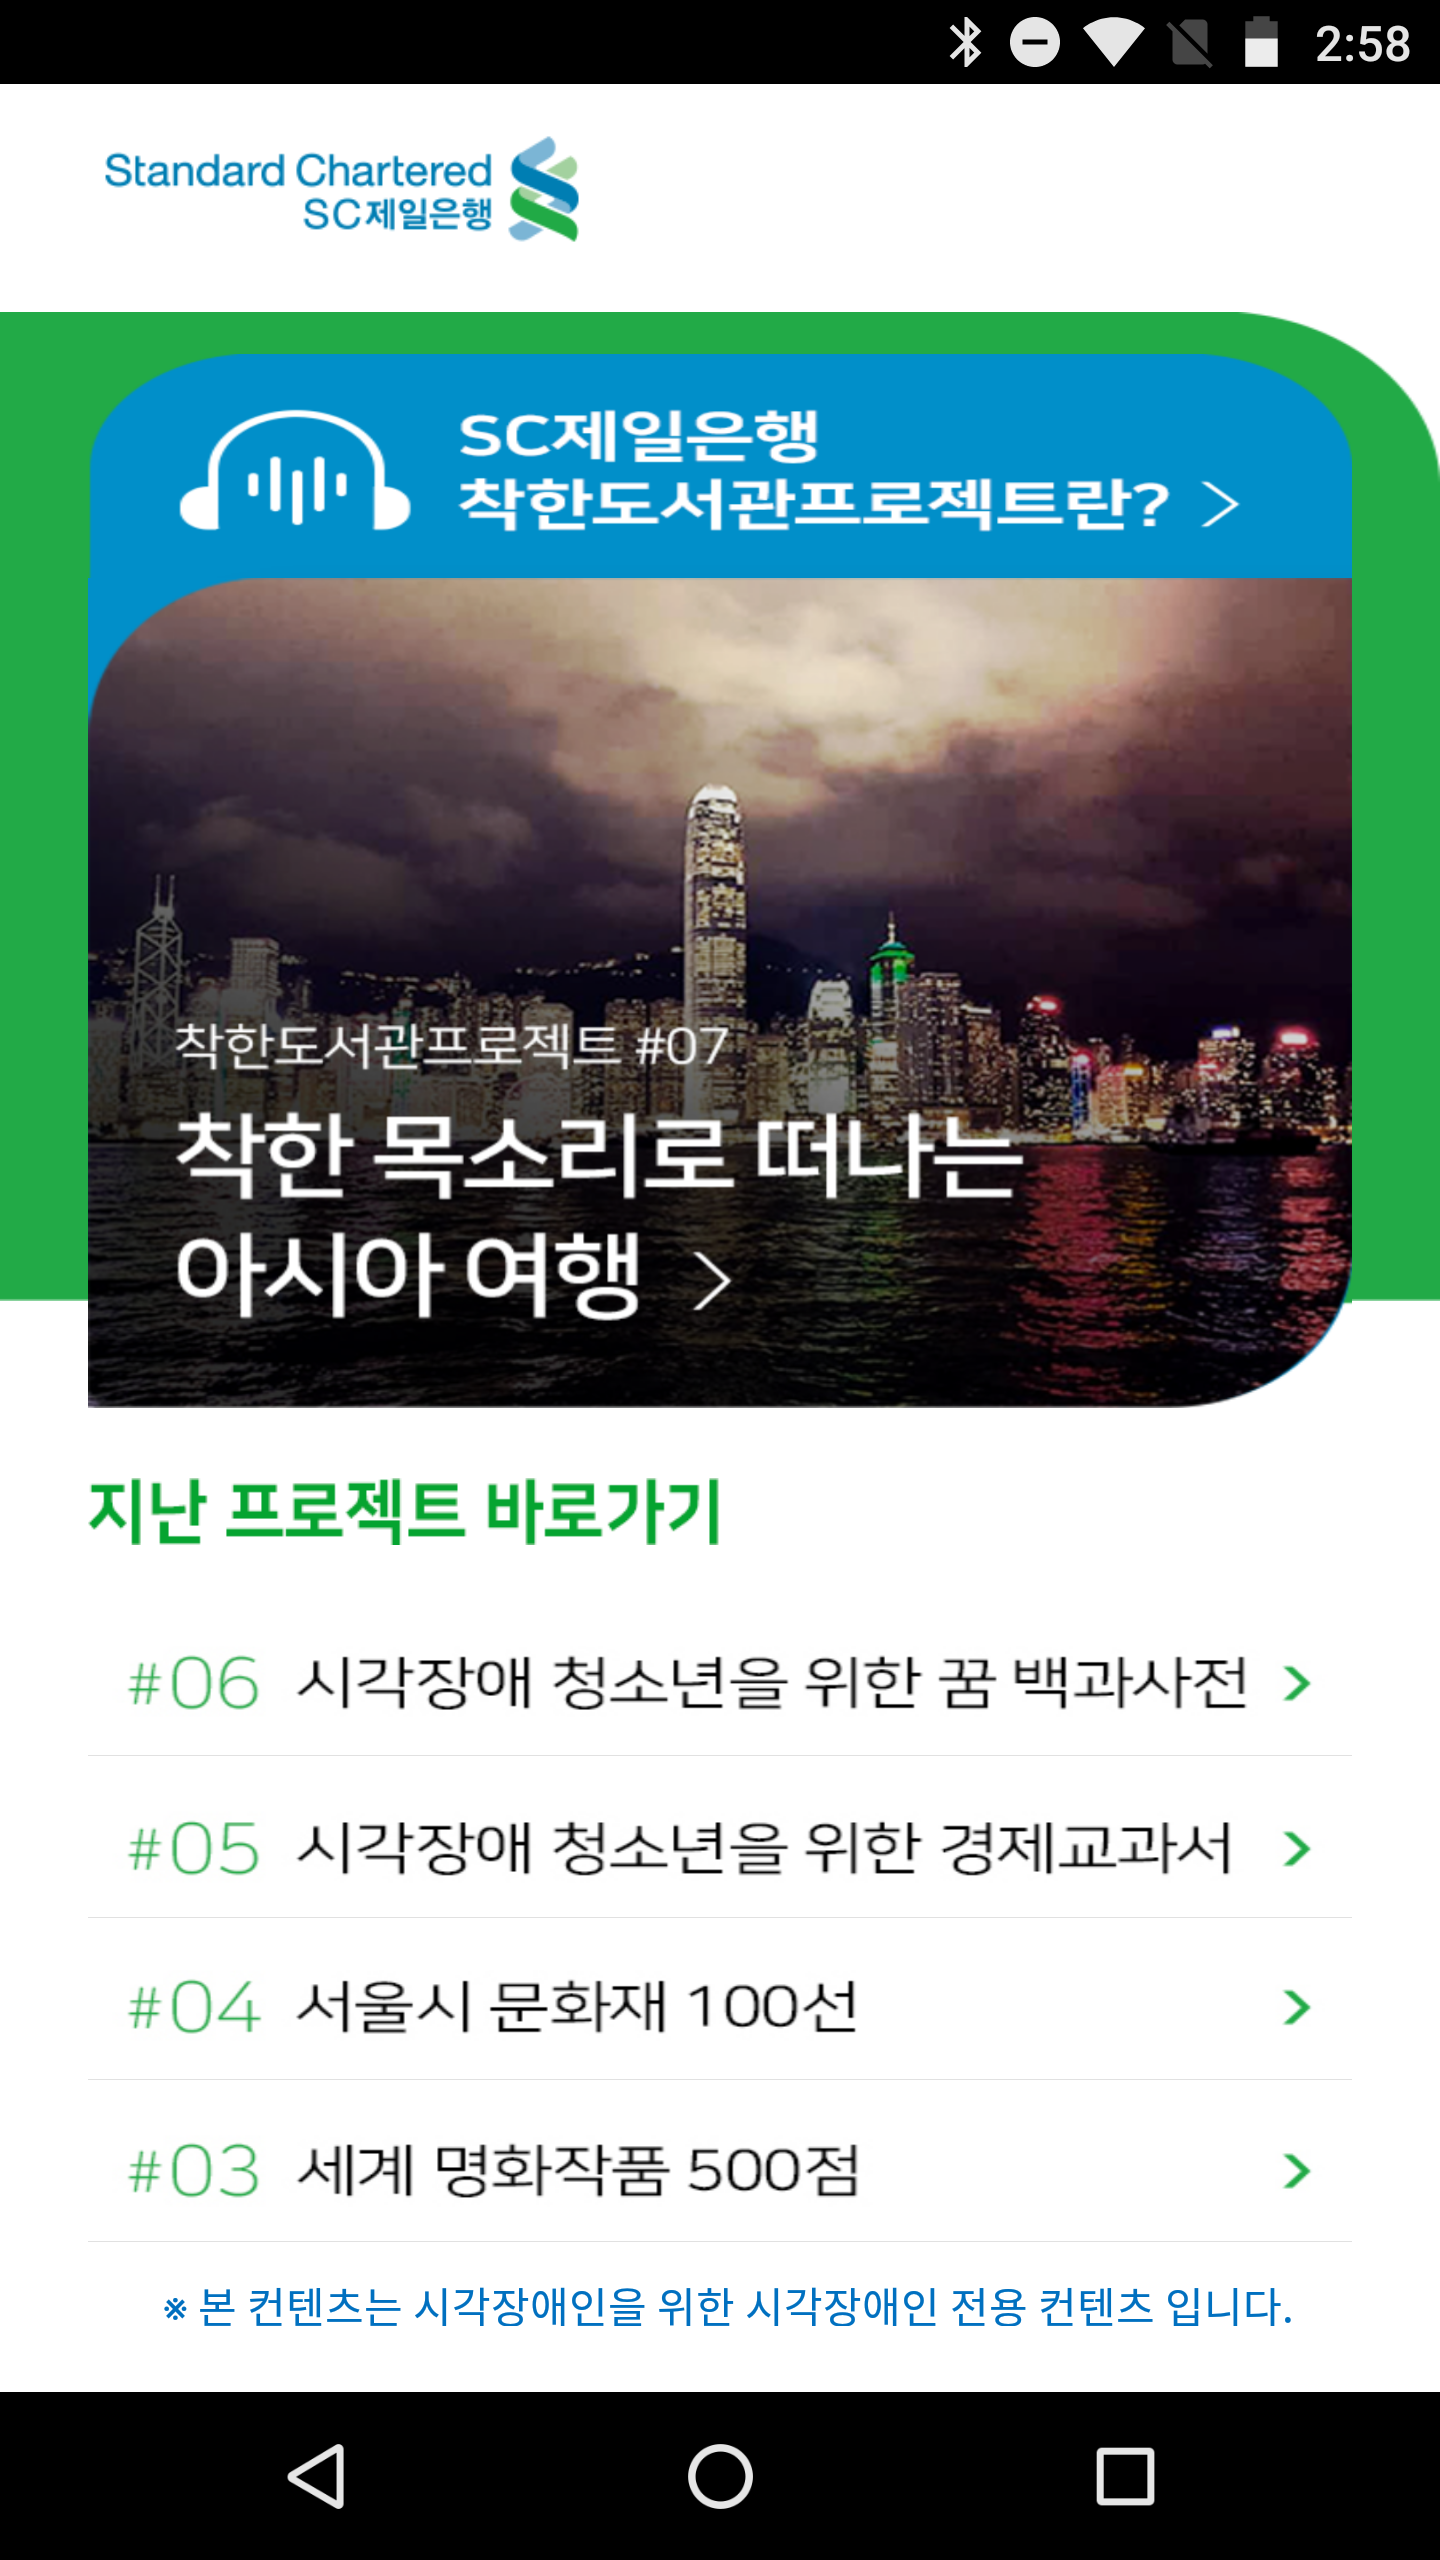 착한도서관 프로젝트 앱 (Android) ver 3.0 스크릿샷